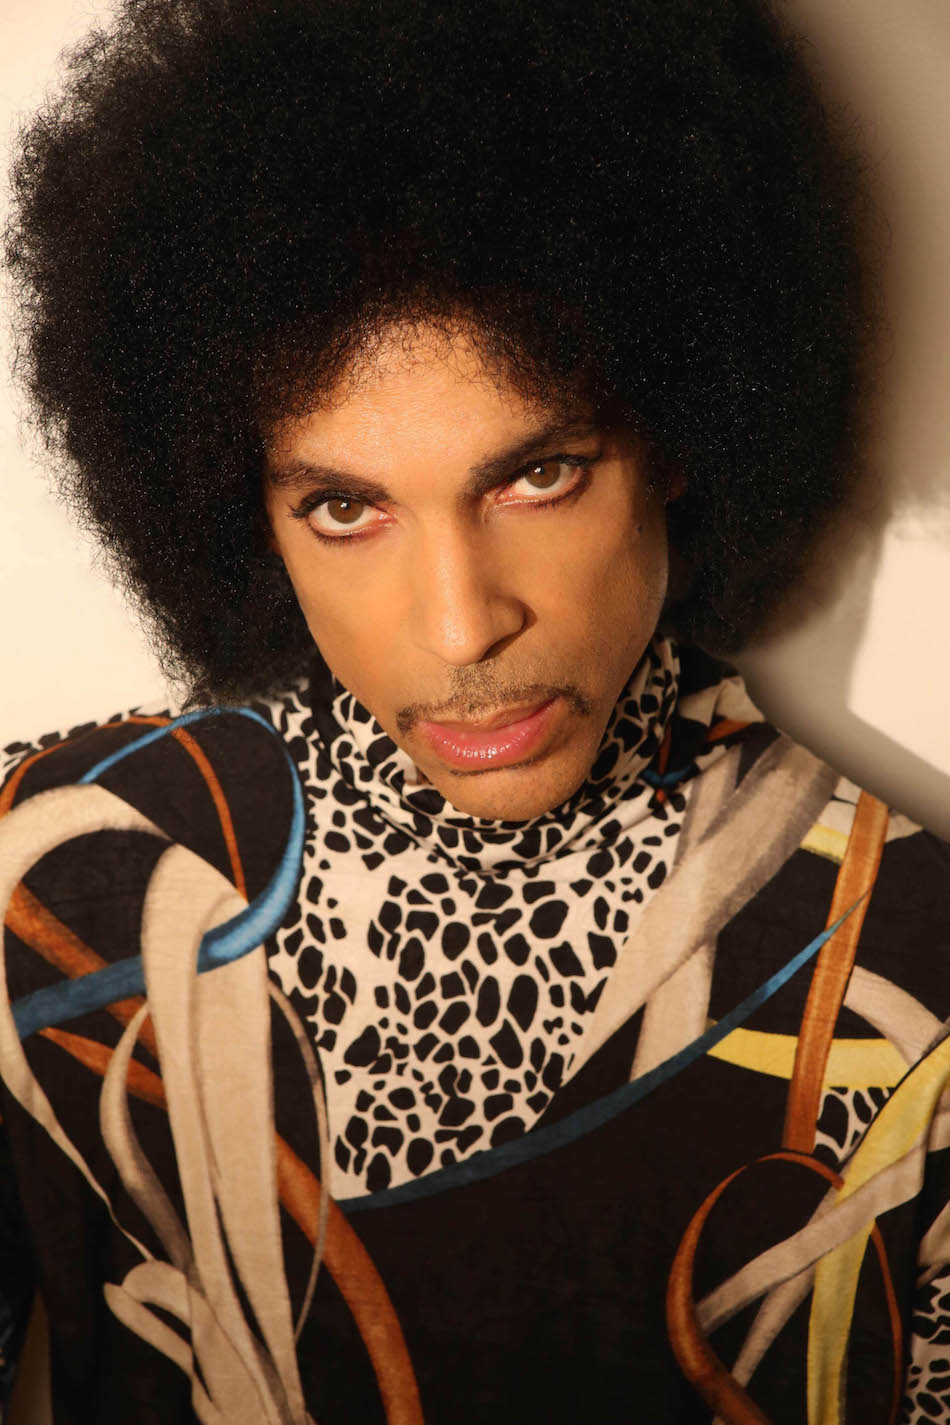 Prince fotografato nel 2015, anno in cui pubblica ben due album